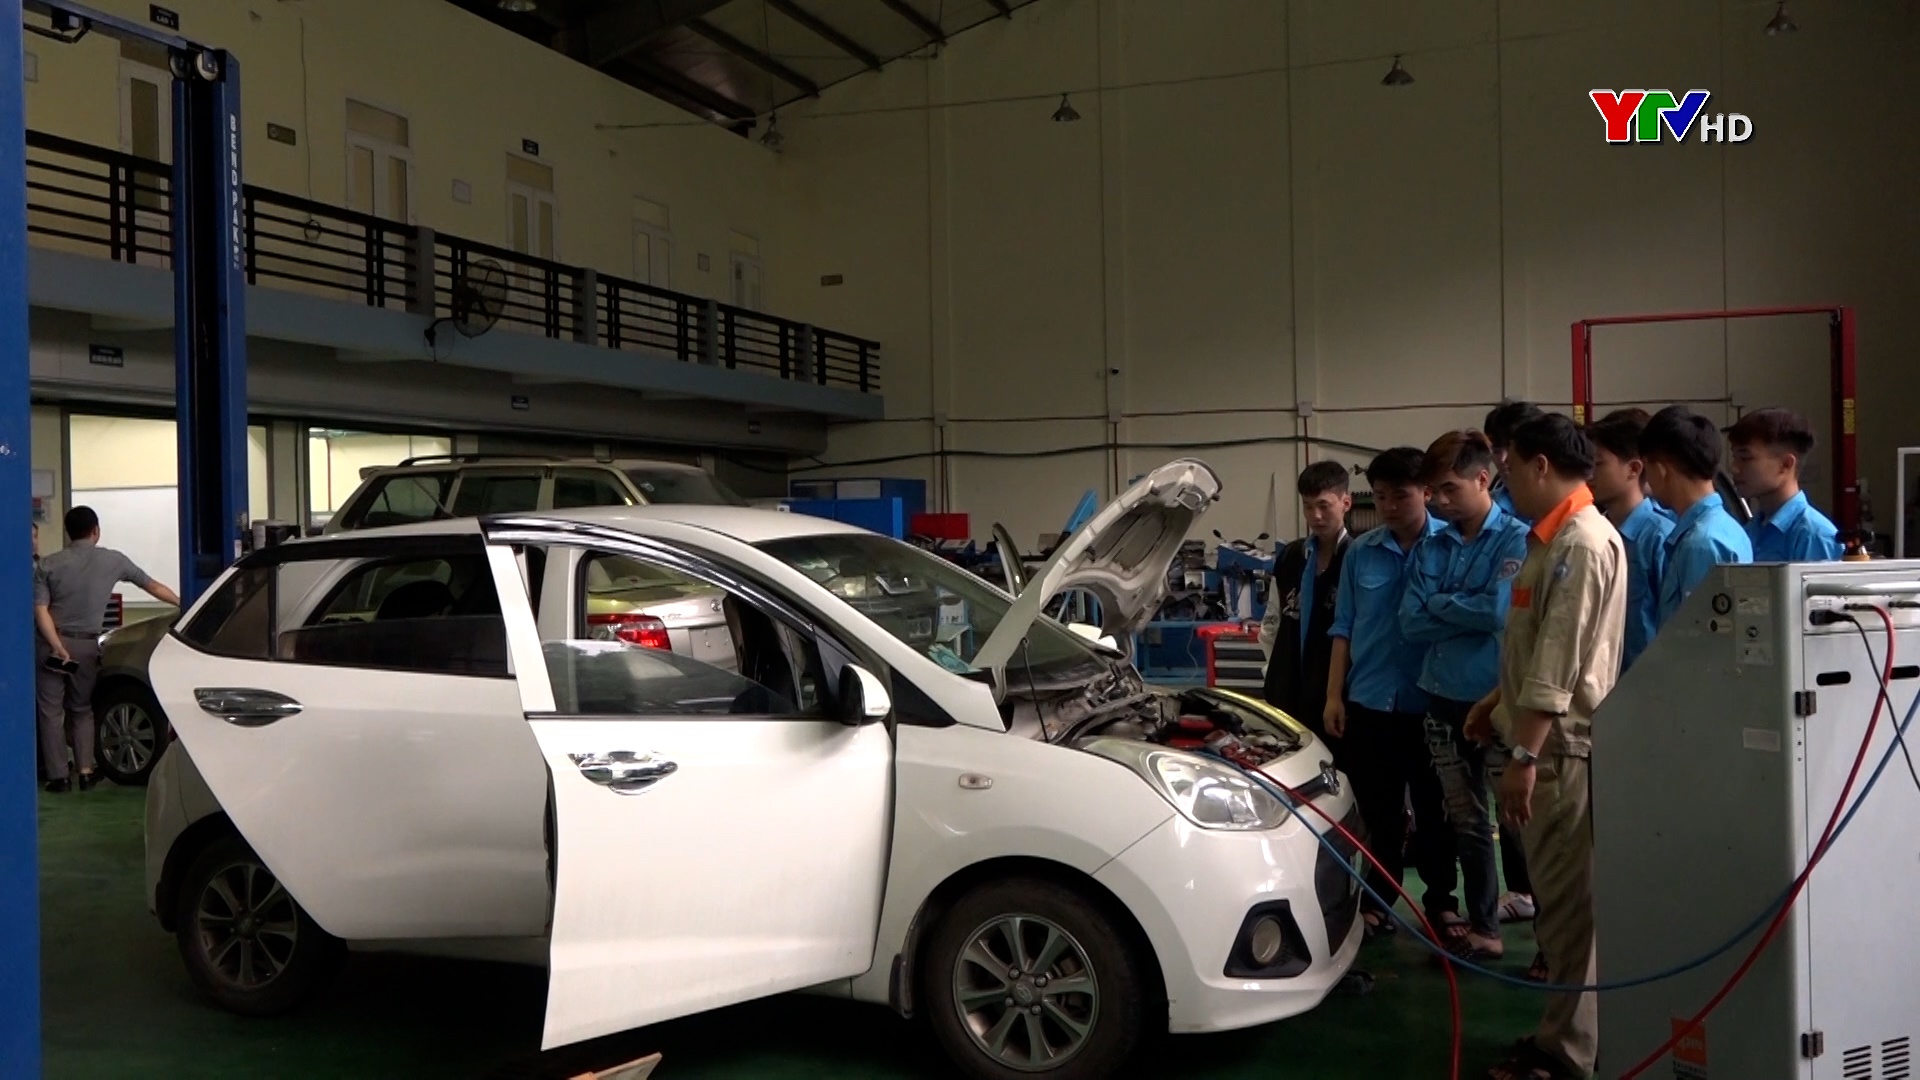 Nở rộ xu hướng học nghề sửa chữa ô tô ở giới trẻ Yên Bái